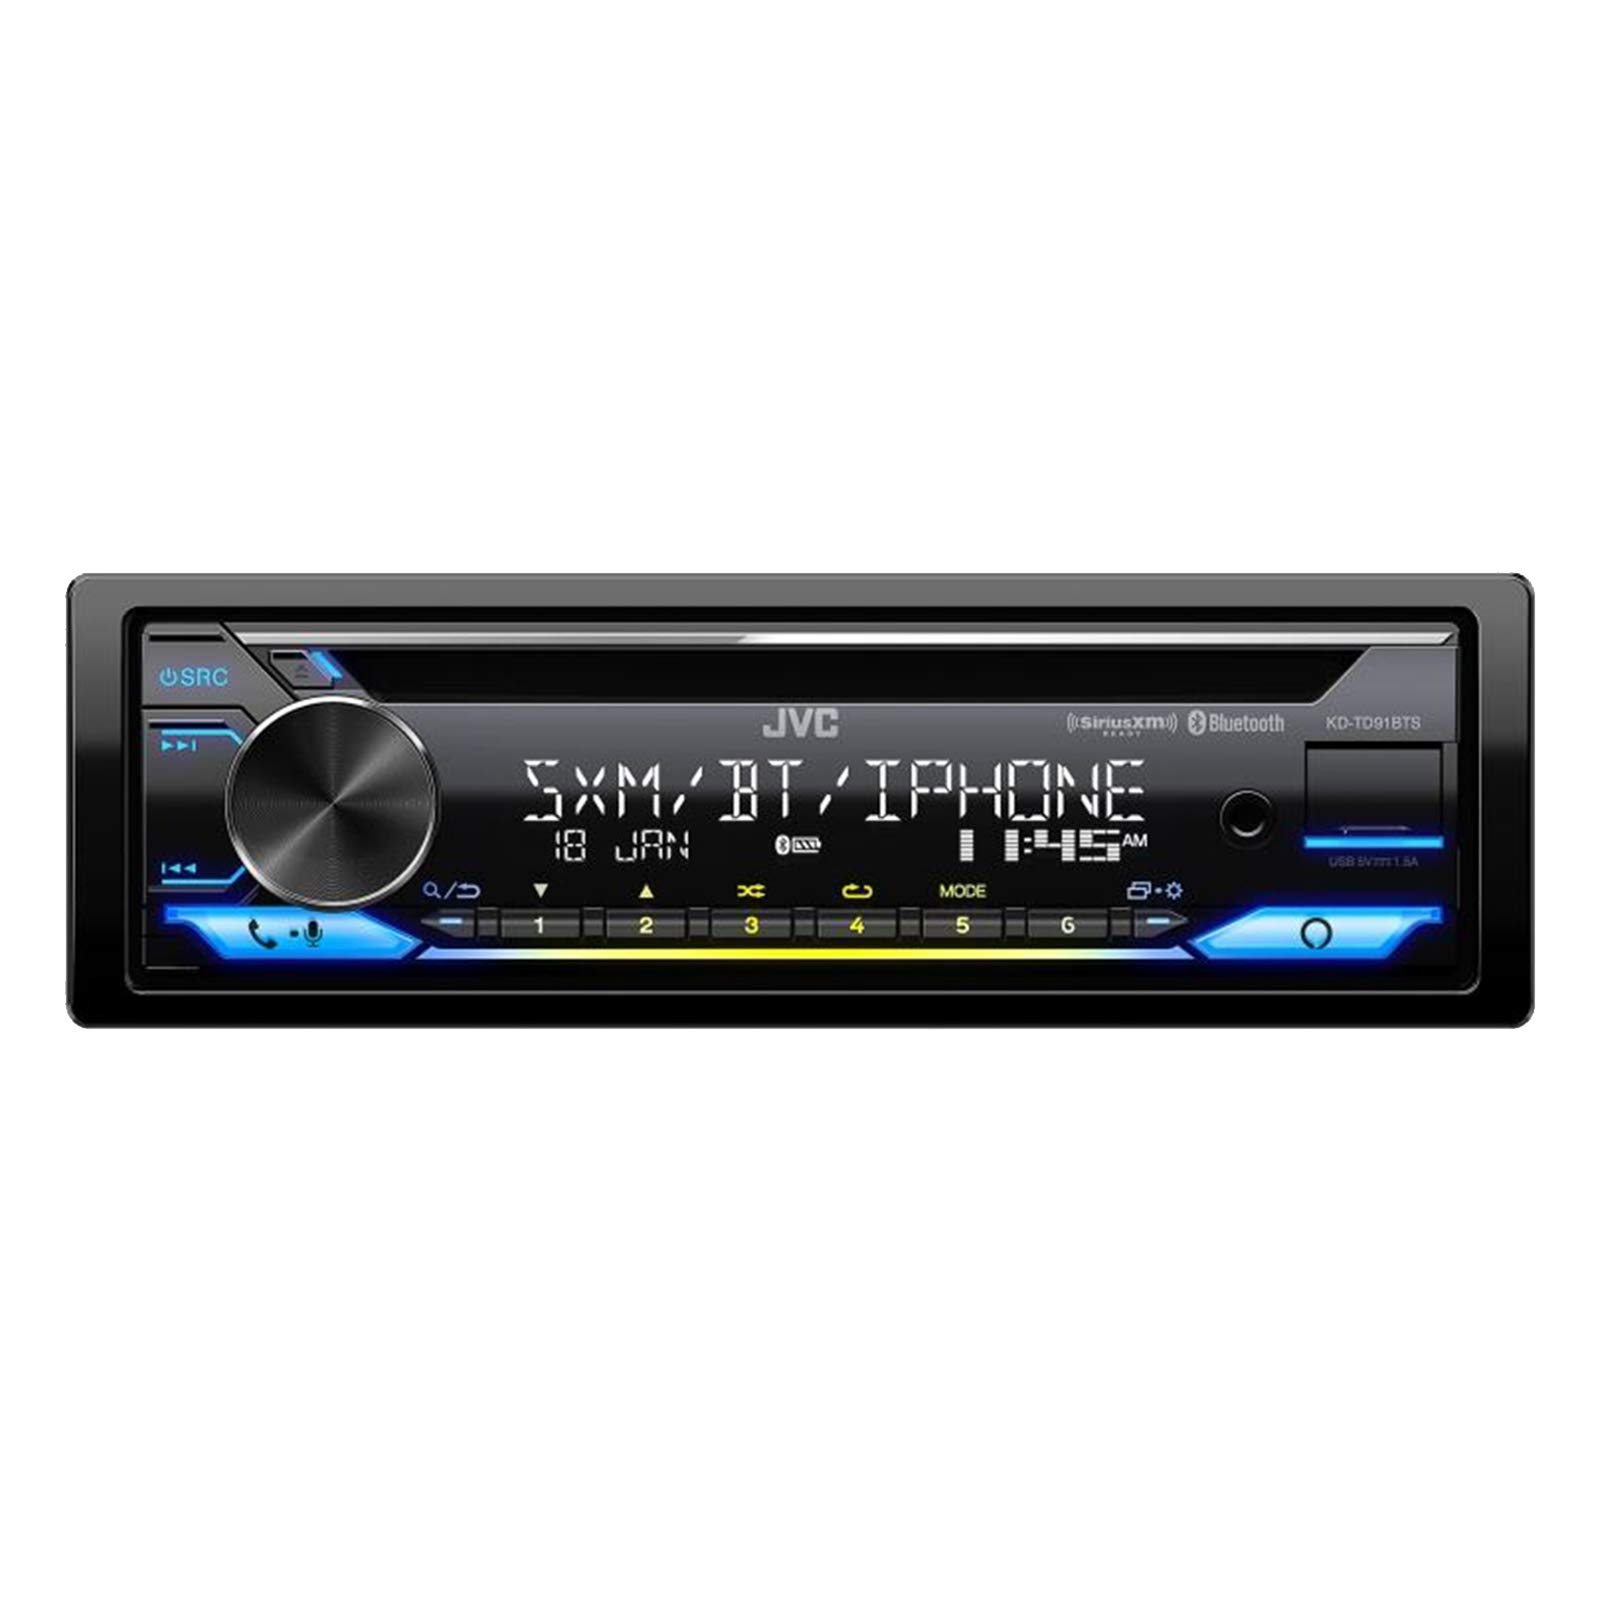  JVC KD-TD91BTS Bluetooth カーステレオレシーバー USB ポート 2 ライン LCD ディスプレイ、AM/FM ラジオ CD および MP3 プレーヤー付き - Amazon Alexa 対応 シングル...